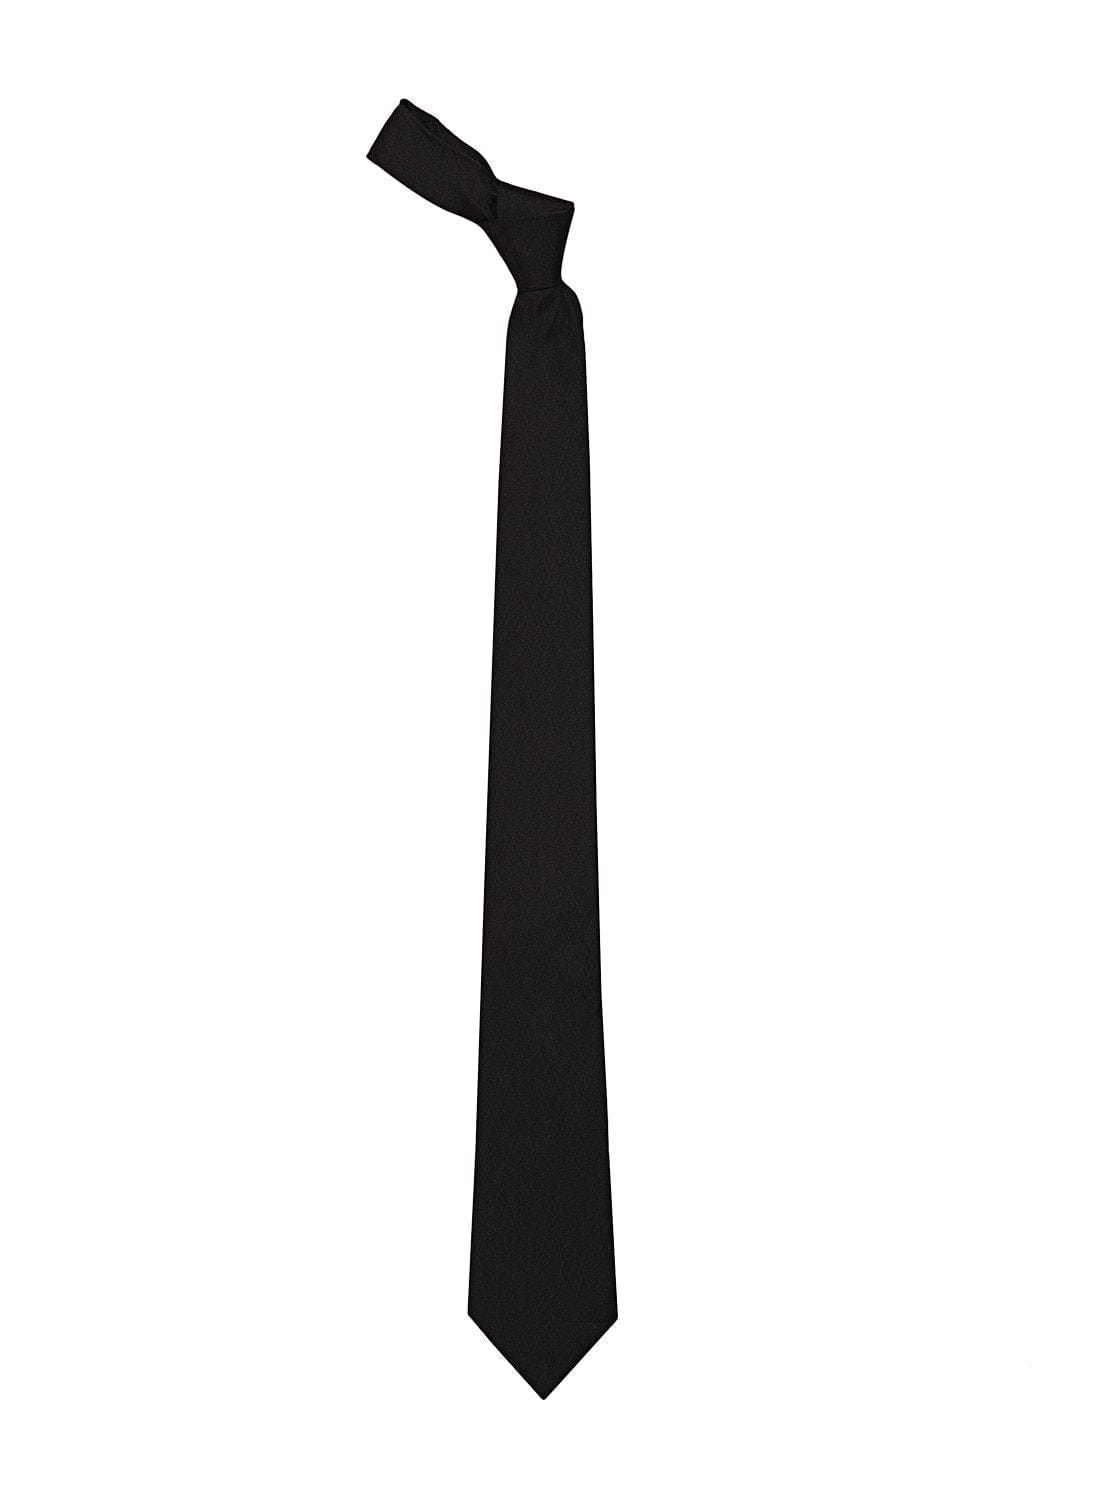 Black color silk tie for men